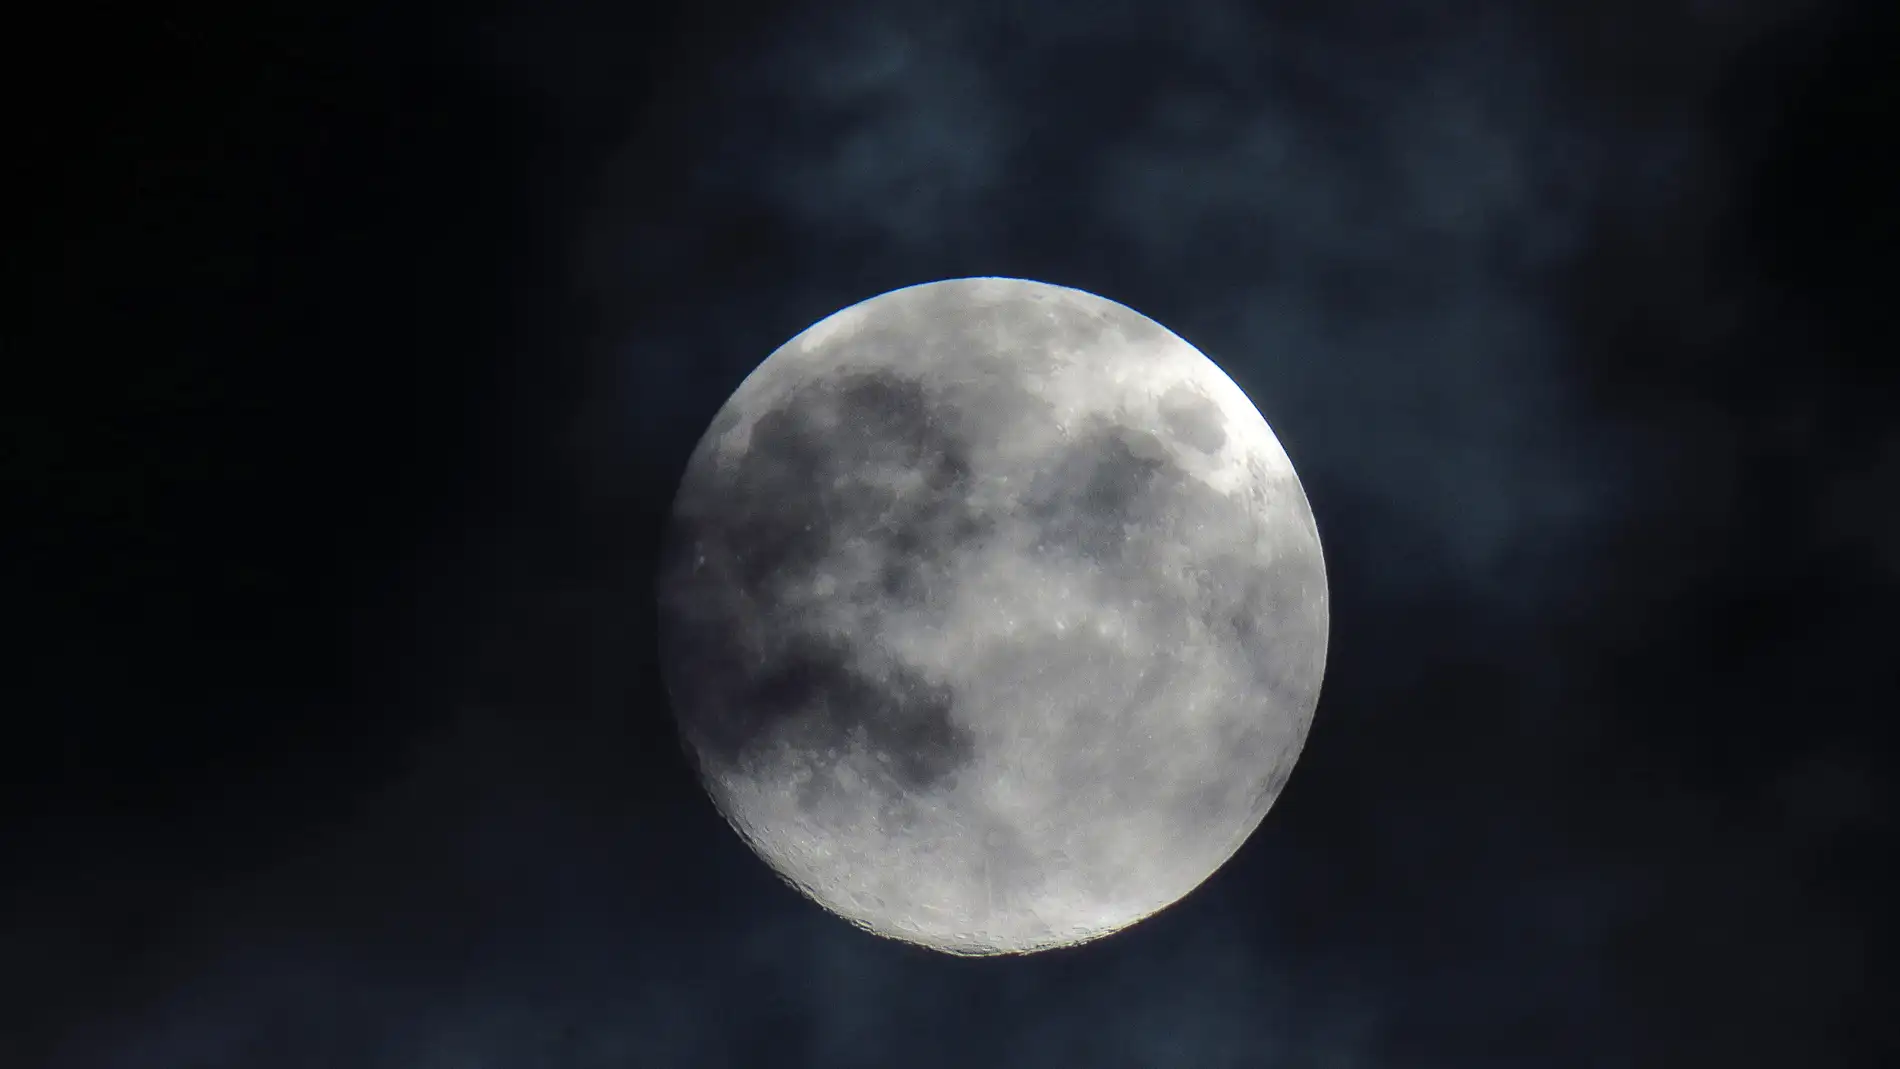 Calendario lunar: ¿Cuándo habrá Luna llena en agosto?